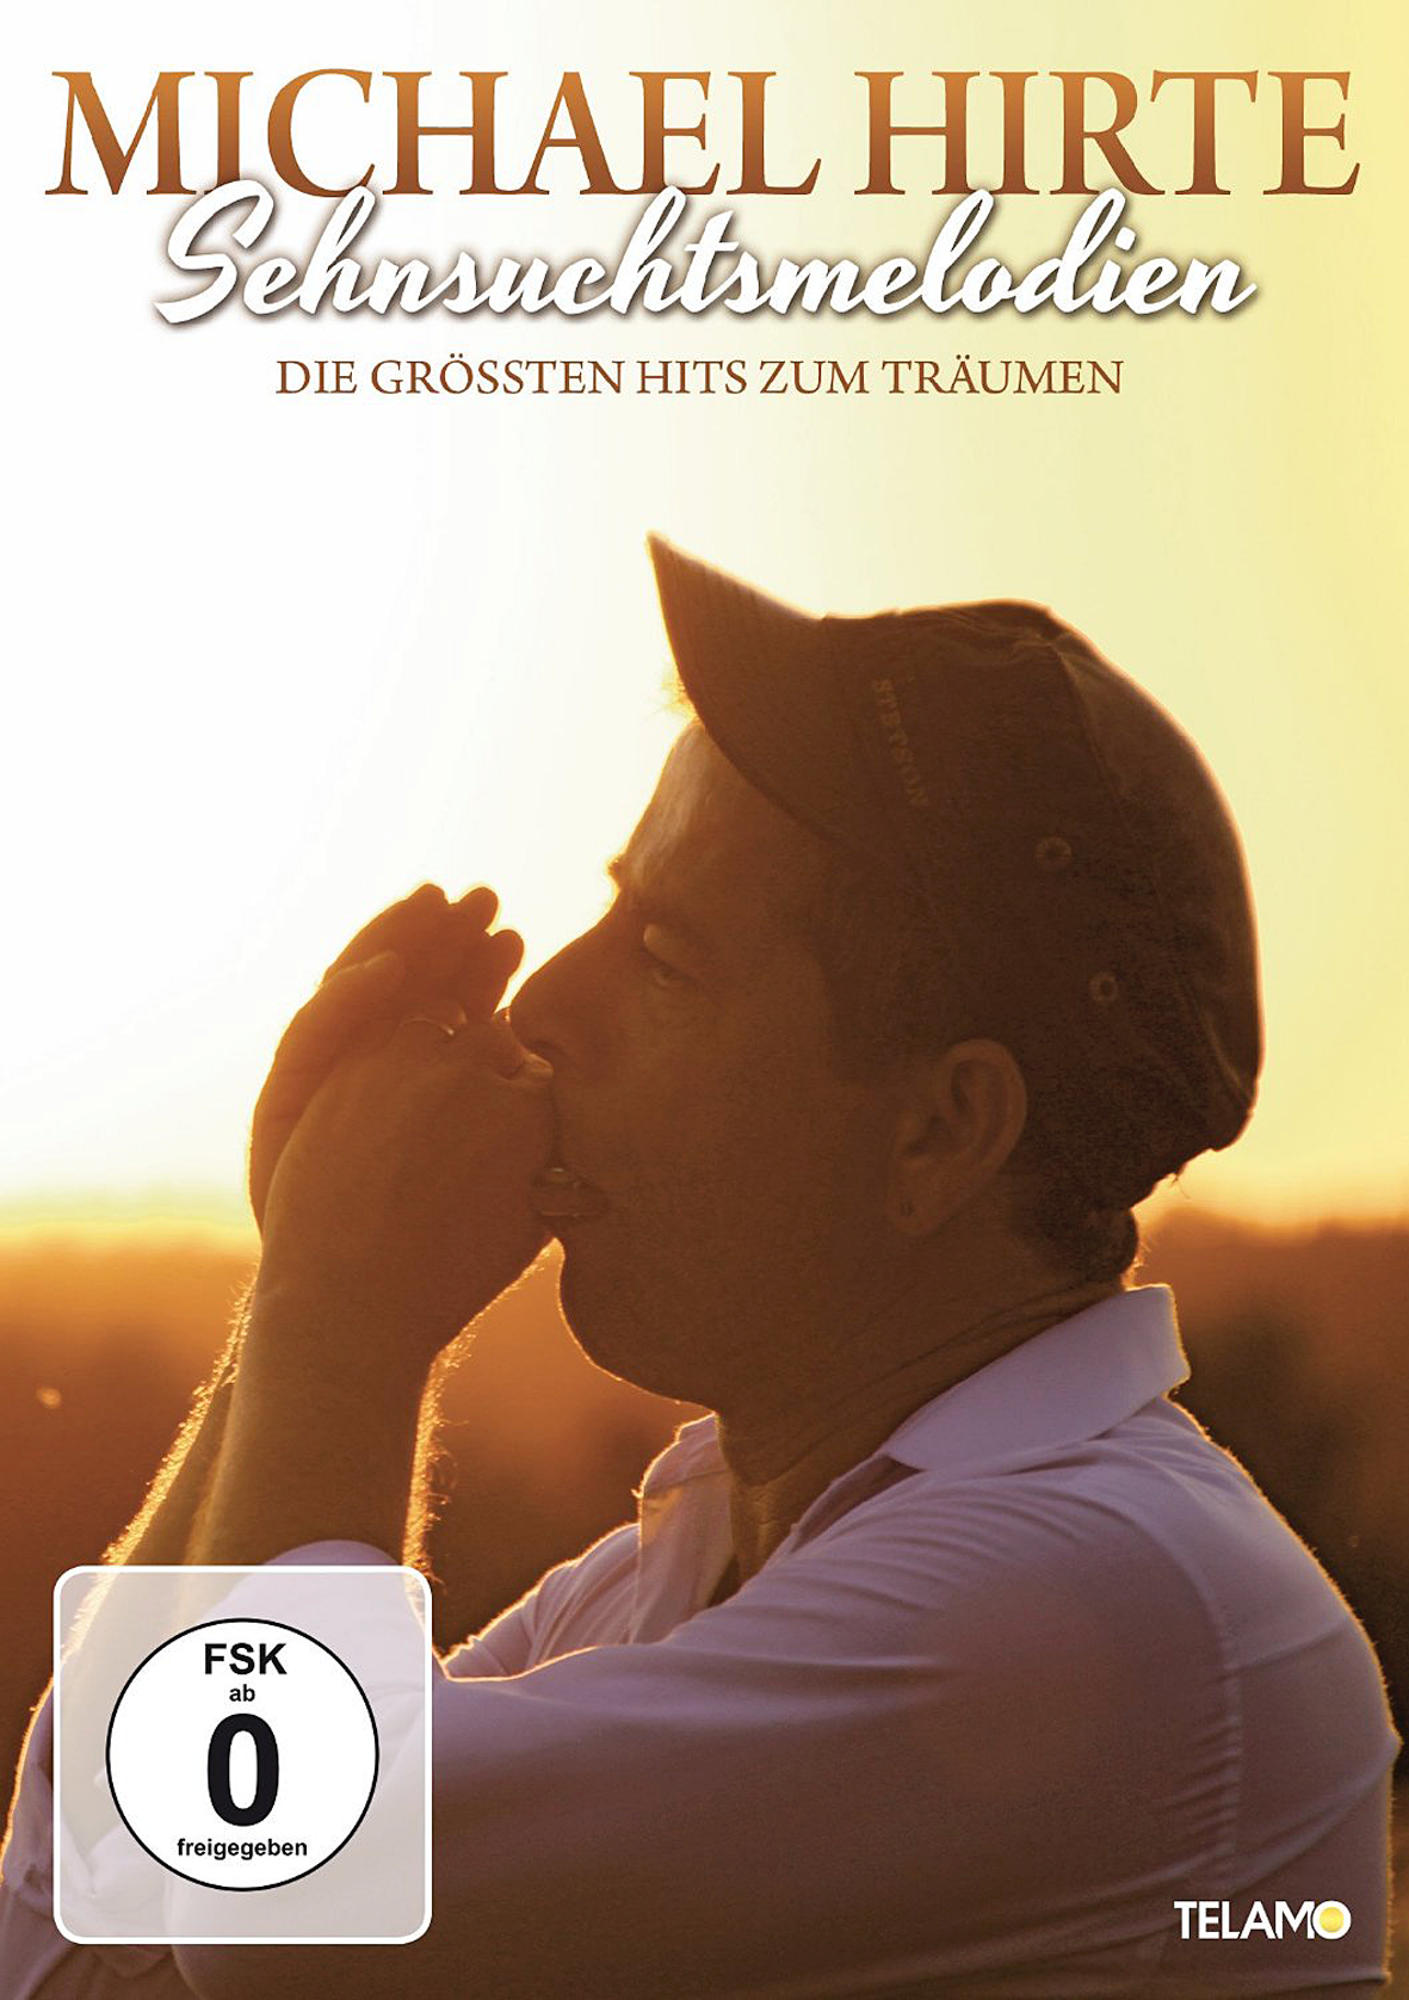 Hirte Sehnsuchtsmelodien-Die Hits Zum (DVD) - Größten Michael - Träumen